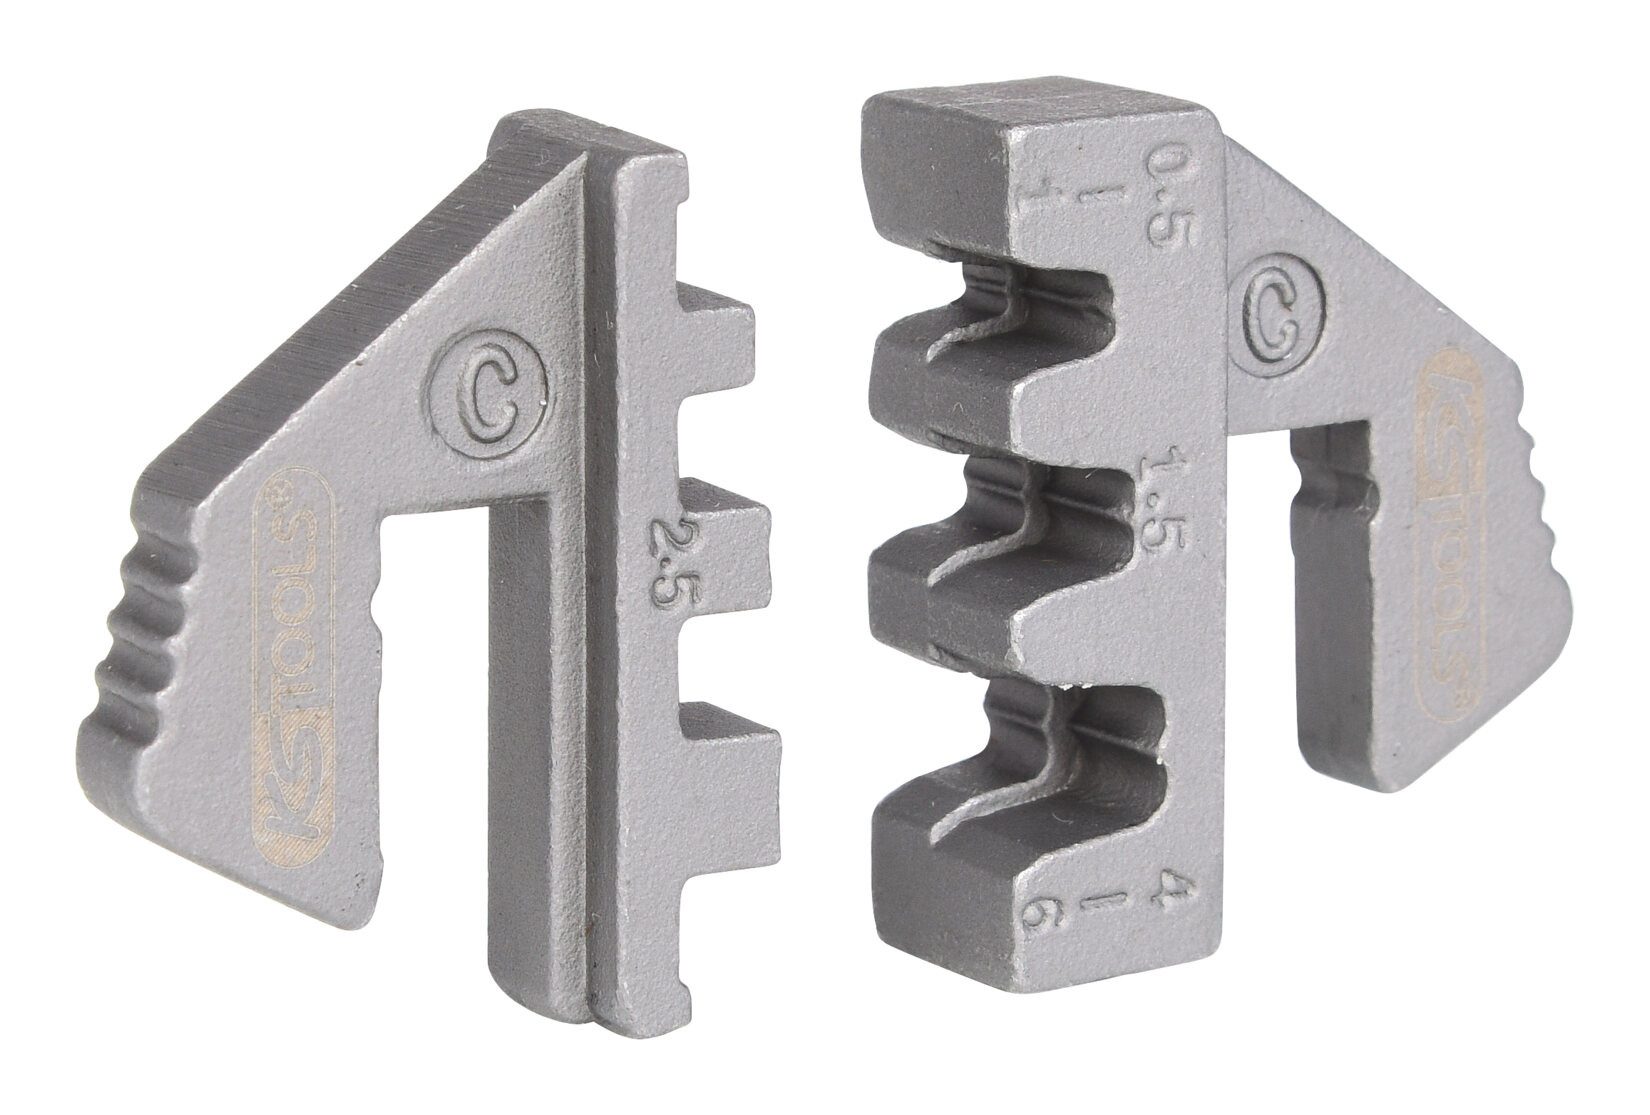 KS Tools Crimpzange, Crimp-Einsätze-Paar für Flachstecker 4,8 und 6,3 mm, Ø 0,5 - 6 mm